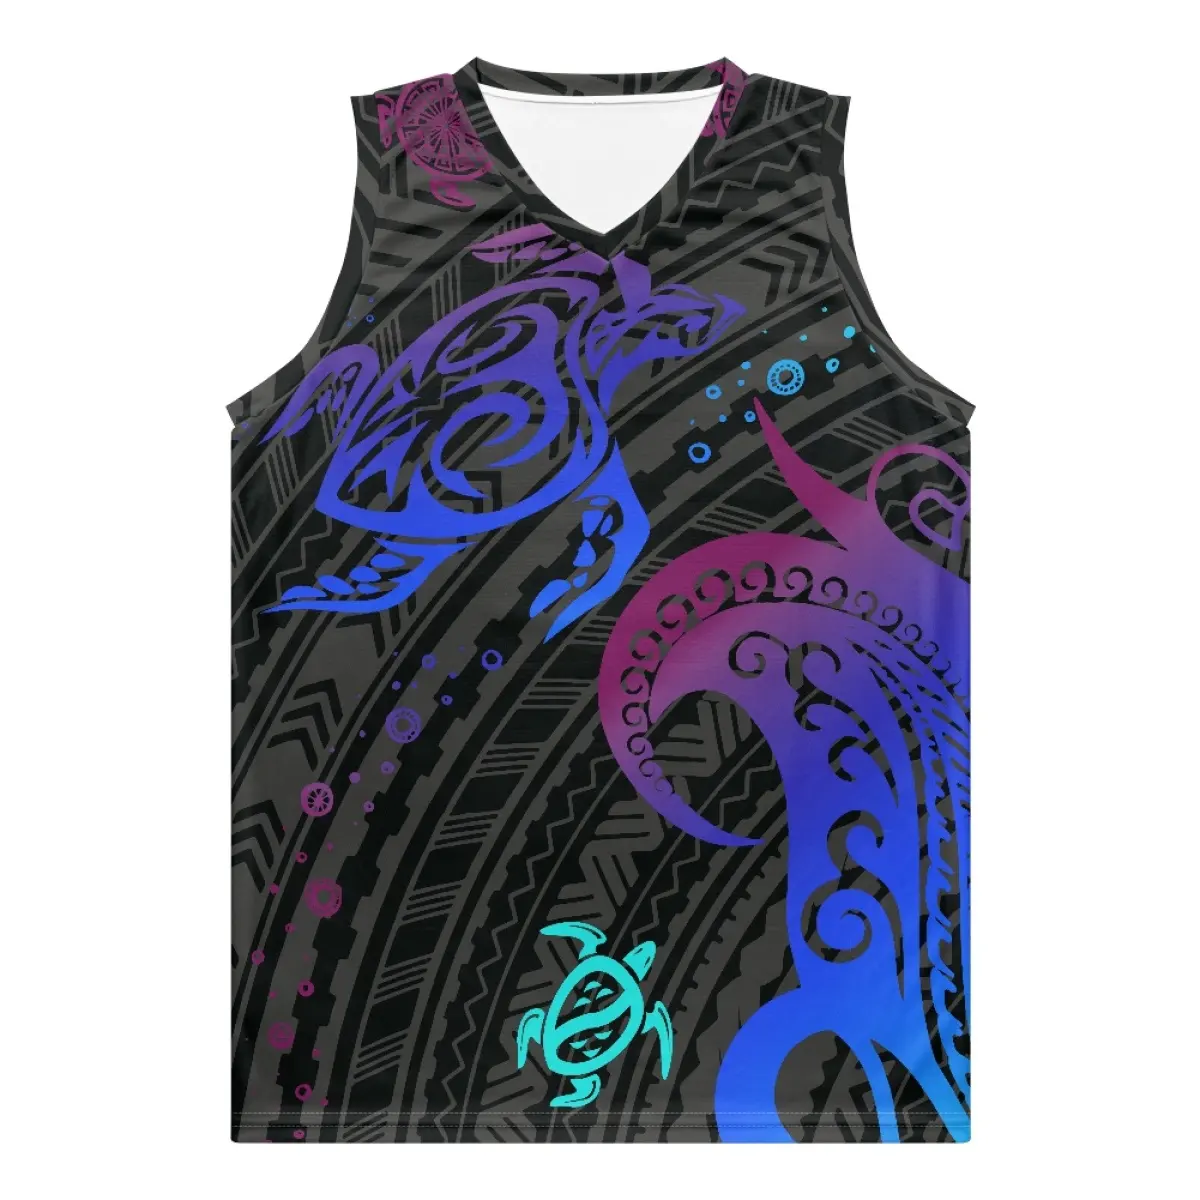 Benutzer definierte Bestseller Großhandel Hochwertige Premium Polynesien Tribal Sea Turtle Print Basketball Jersey Uniform Design Farbe Blau